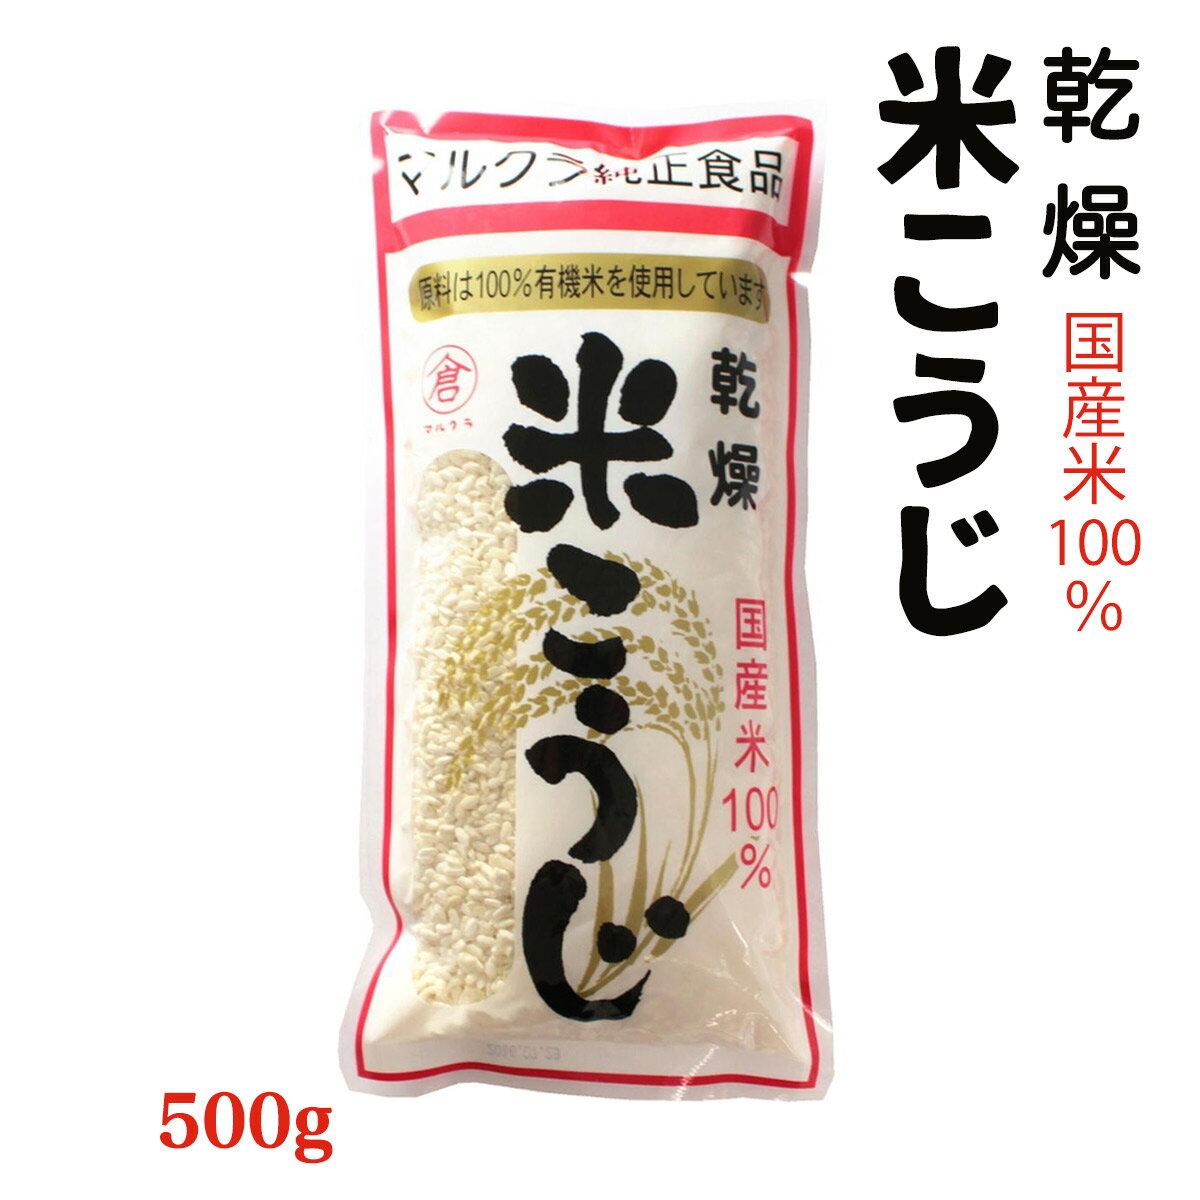 【スーパーセール価格】[マルクラ食品] 国産 有機米使用 乾燥 白米こうじ 500g /有機 オーガニック 国産